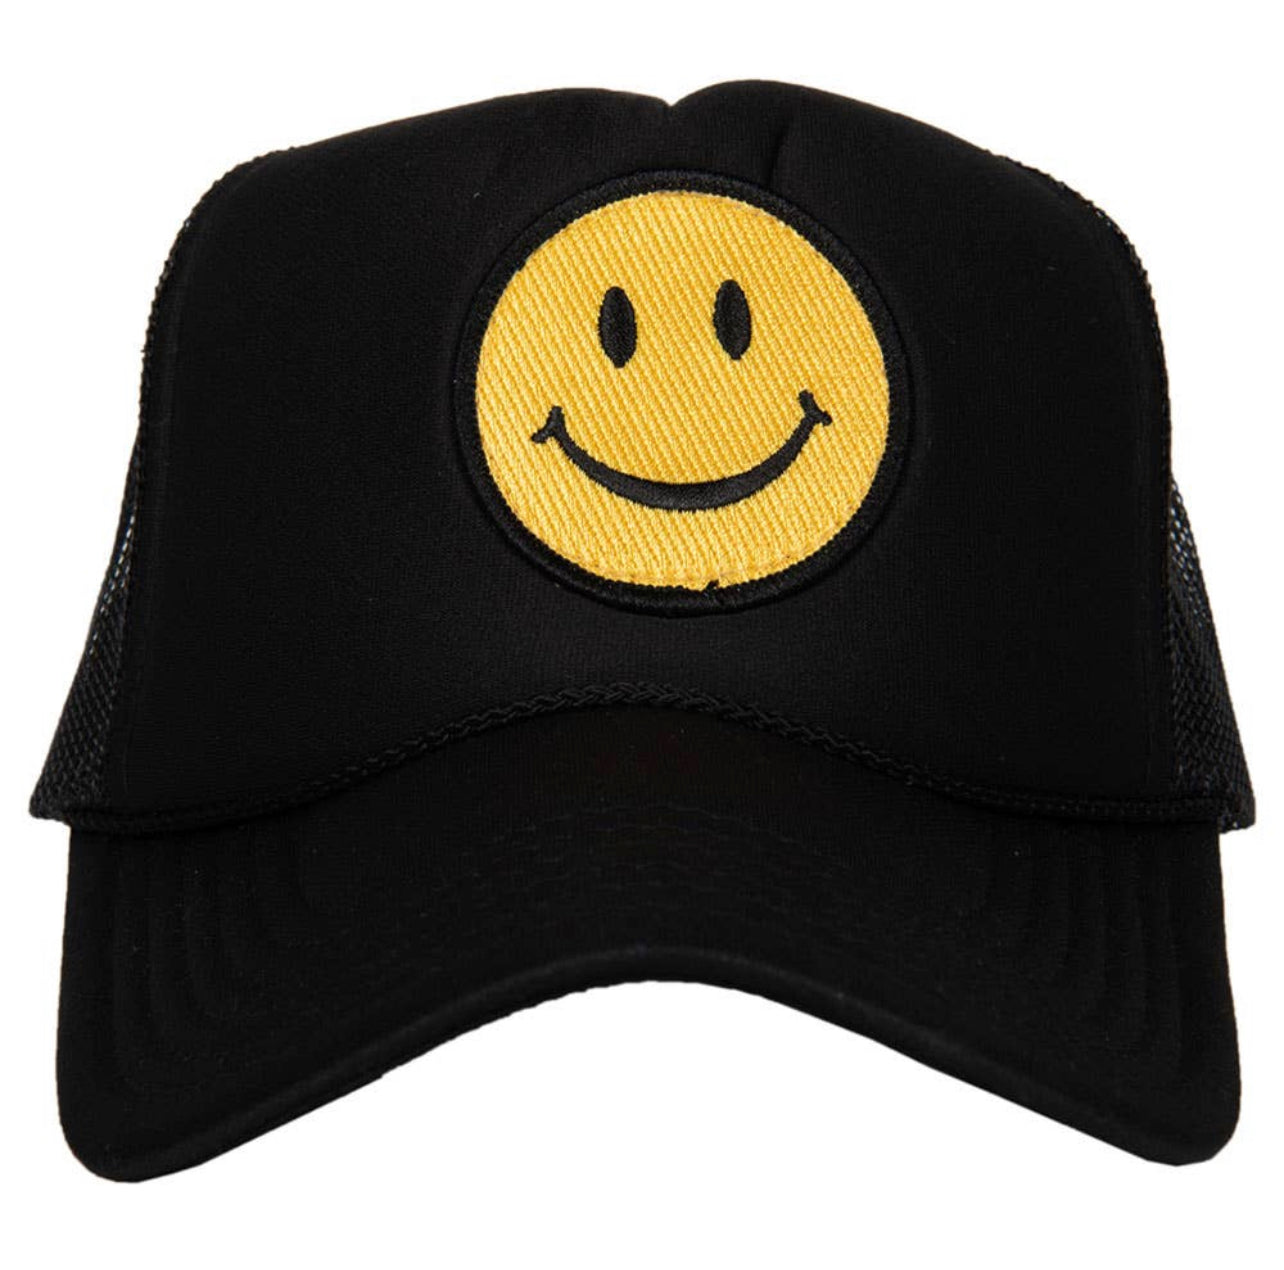 Happy Face Trucker Hat, Black